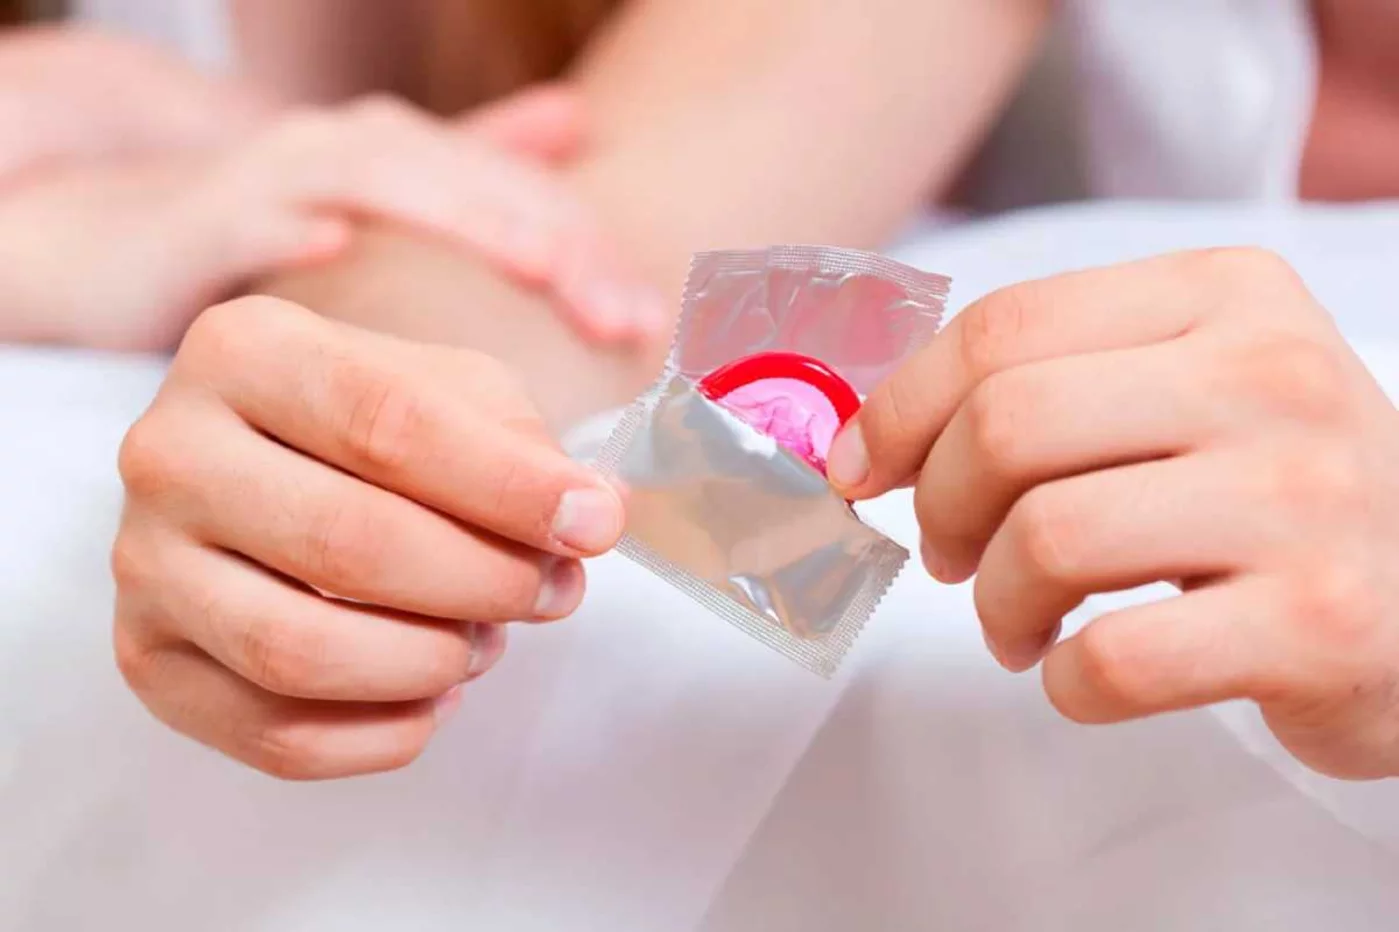 El 80% de los jóvenes que usan métodos de protección usa preservativos, pero de forma inconstante.